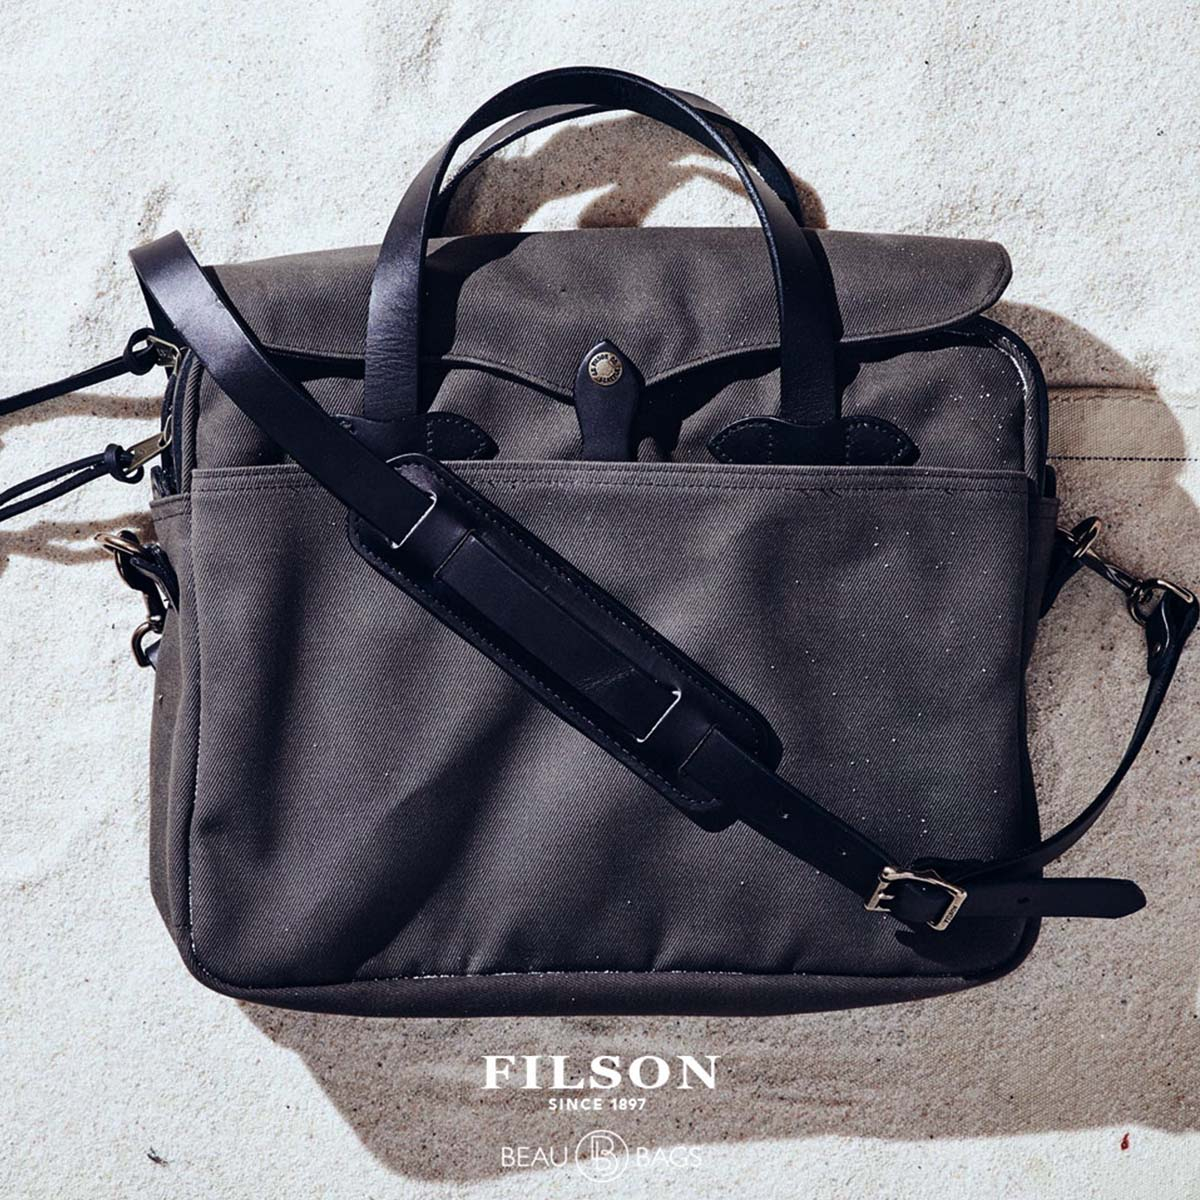 Filson Original Briefcase 11070256 Cinder, lifestyle